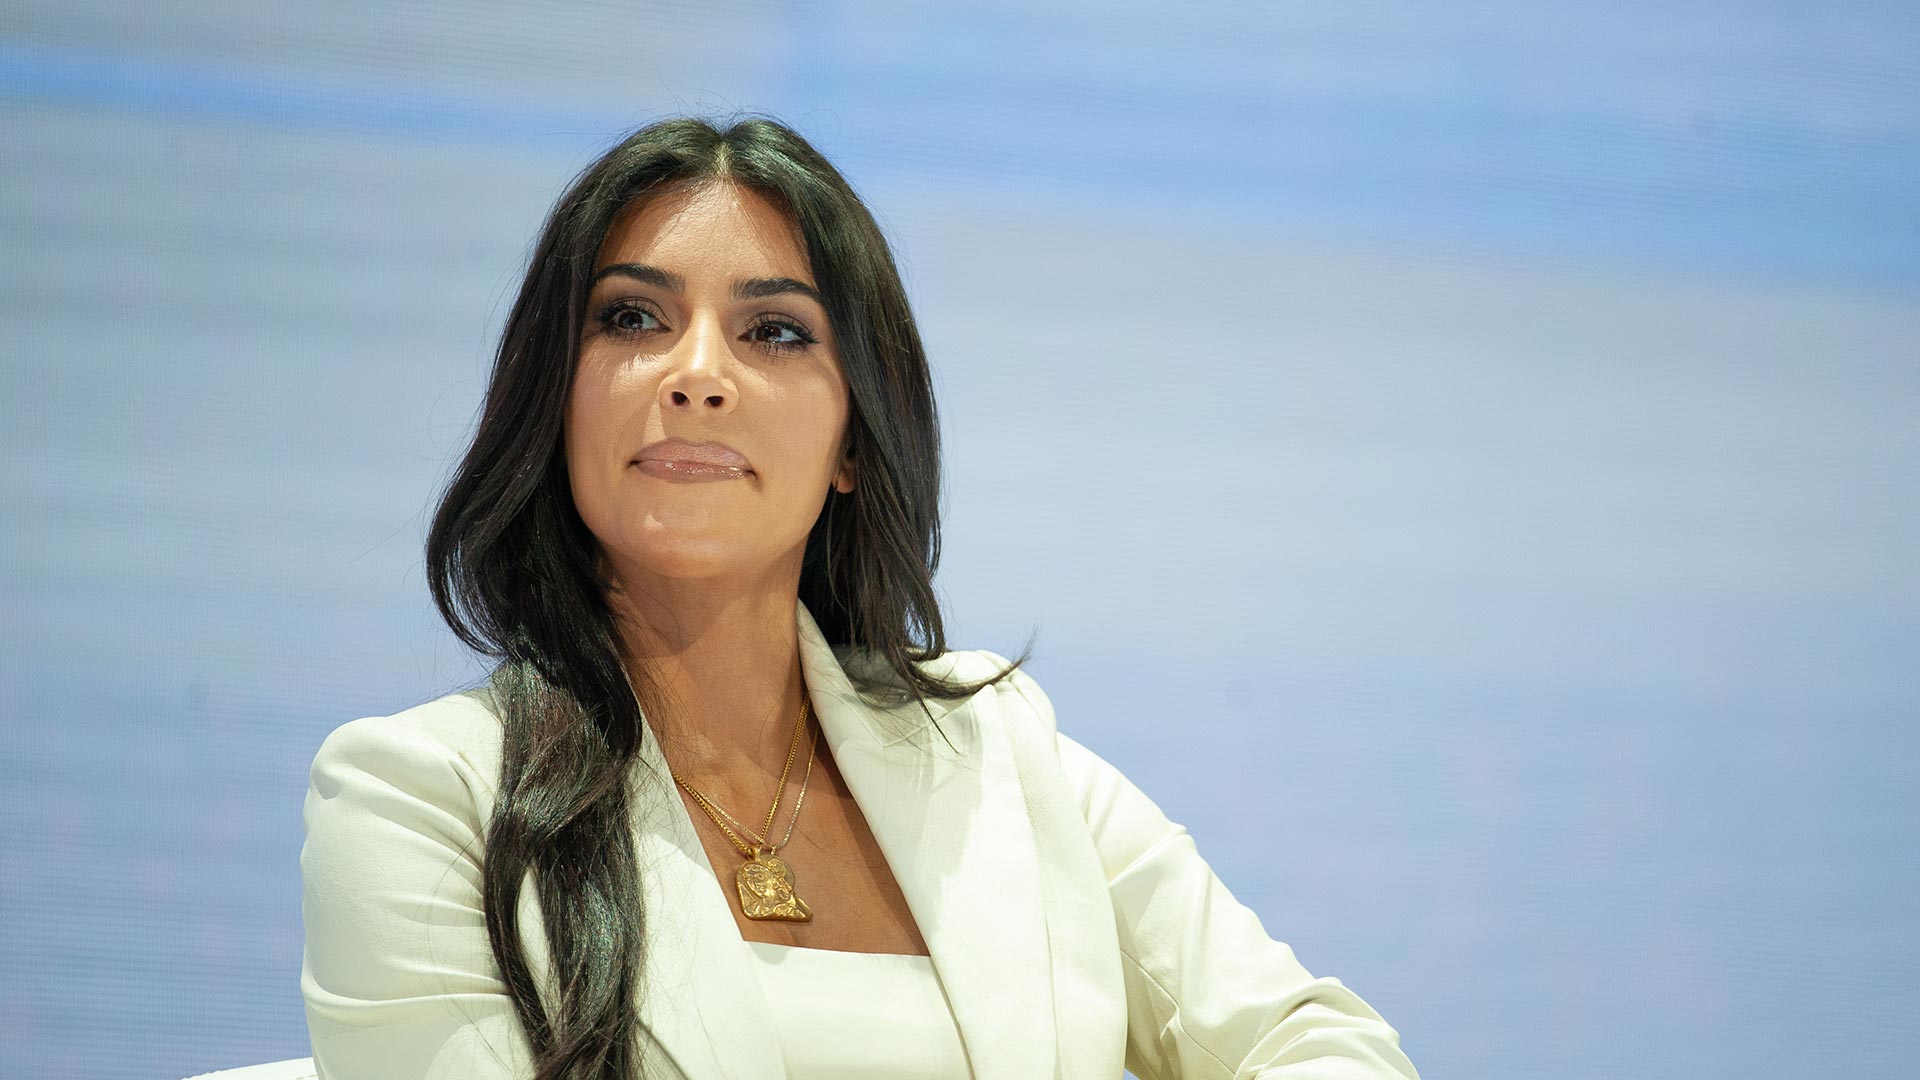 Kim Kardashian promove criptomoeda suspeita e entra na mira de regulador financeiro